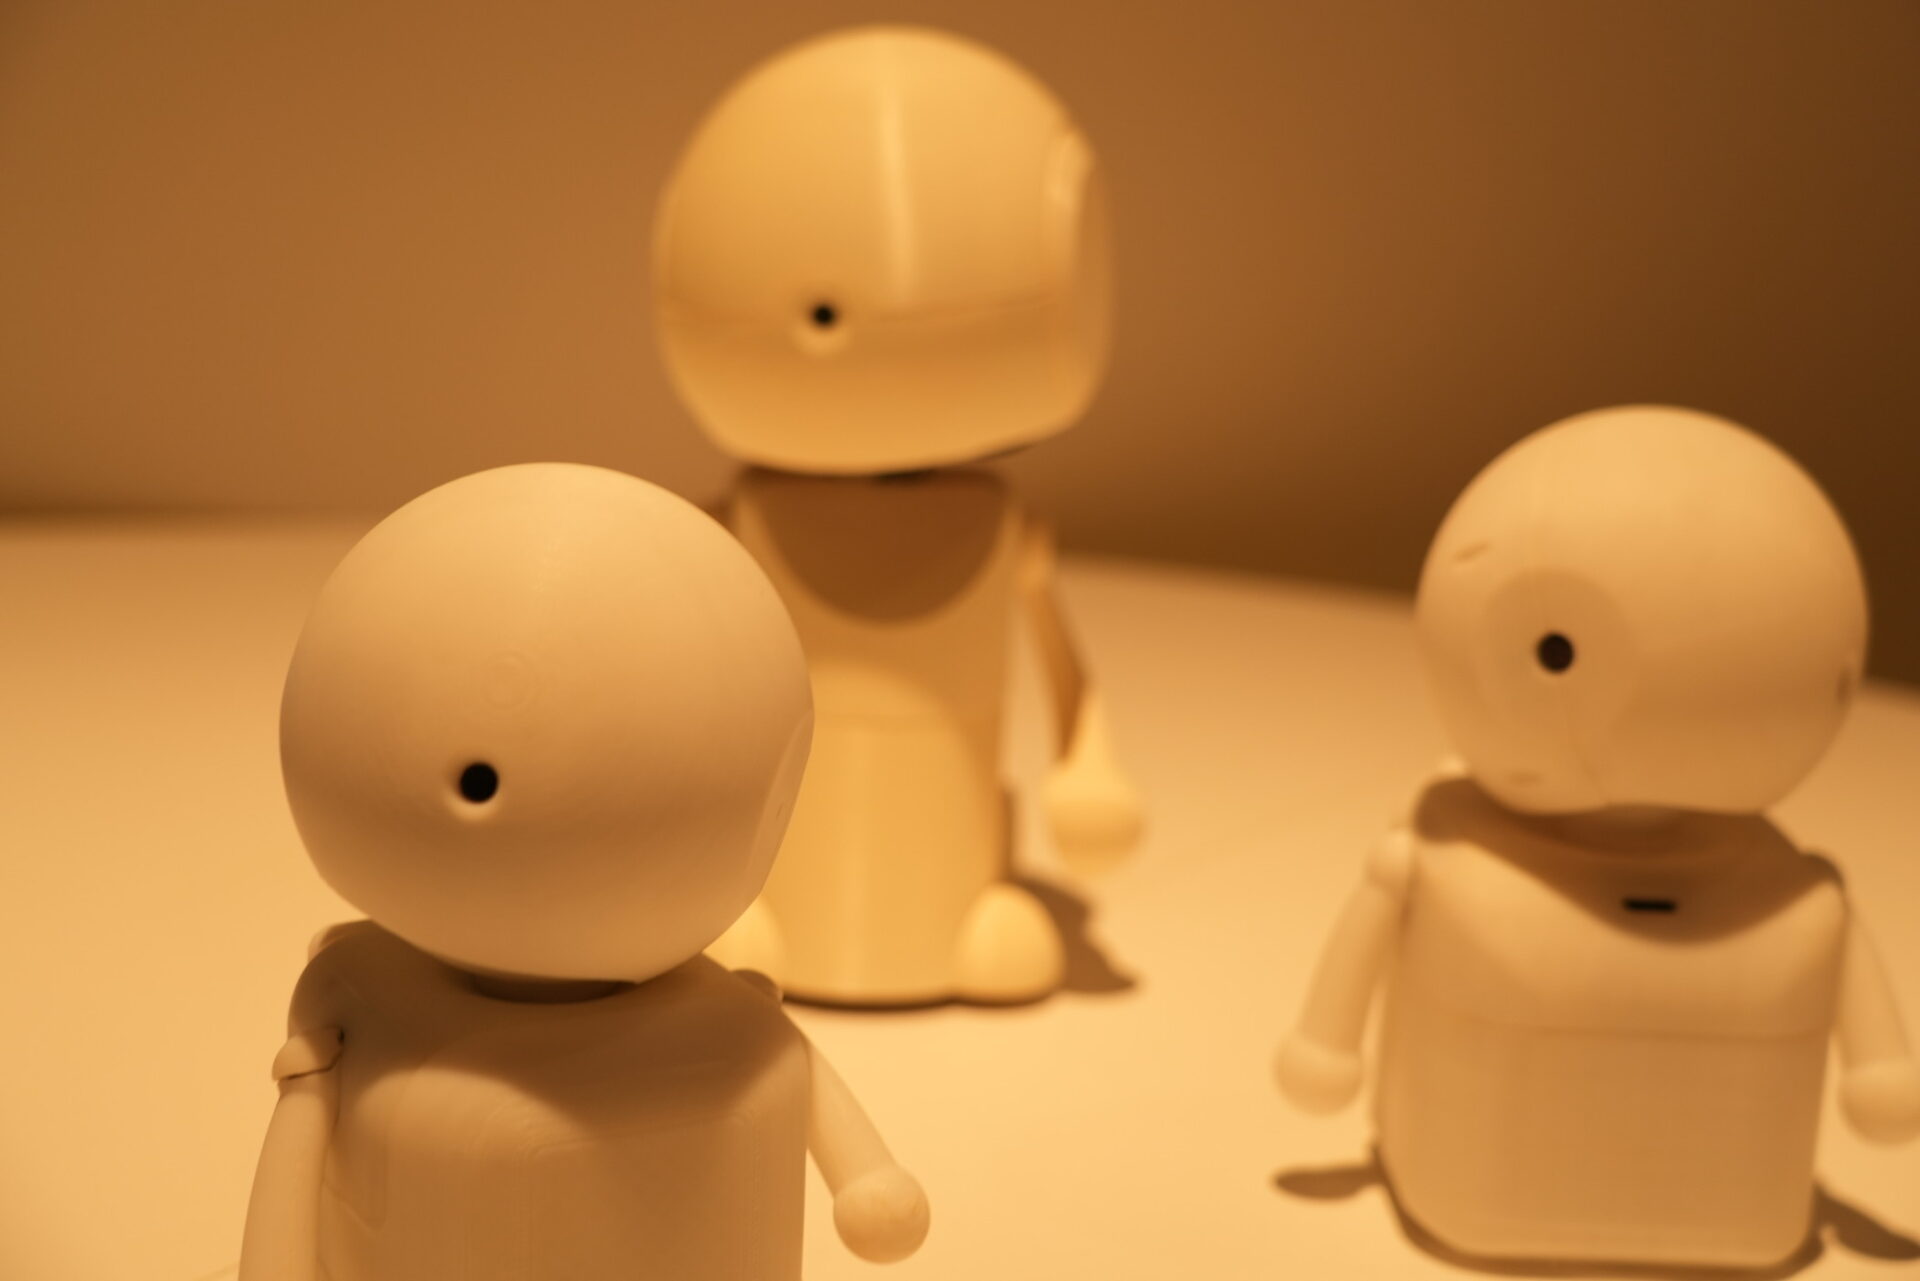 きみとロボット展で撮影した小型のおしゃべりロボットの写真